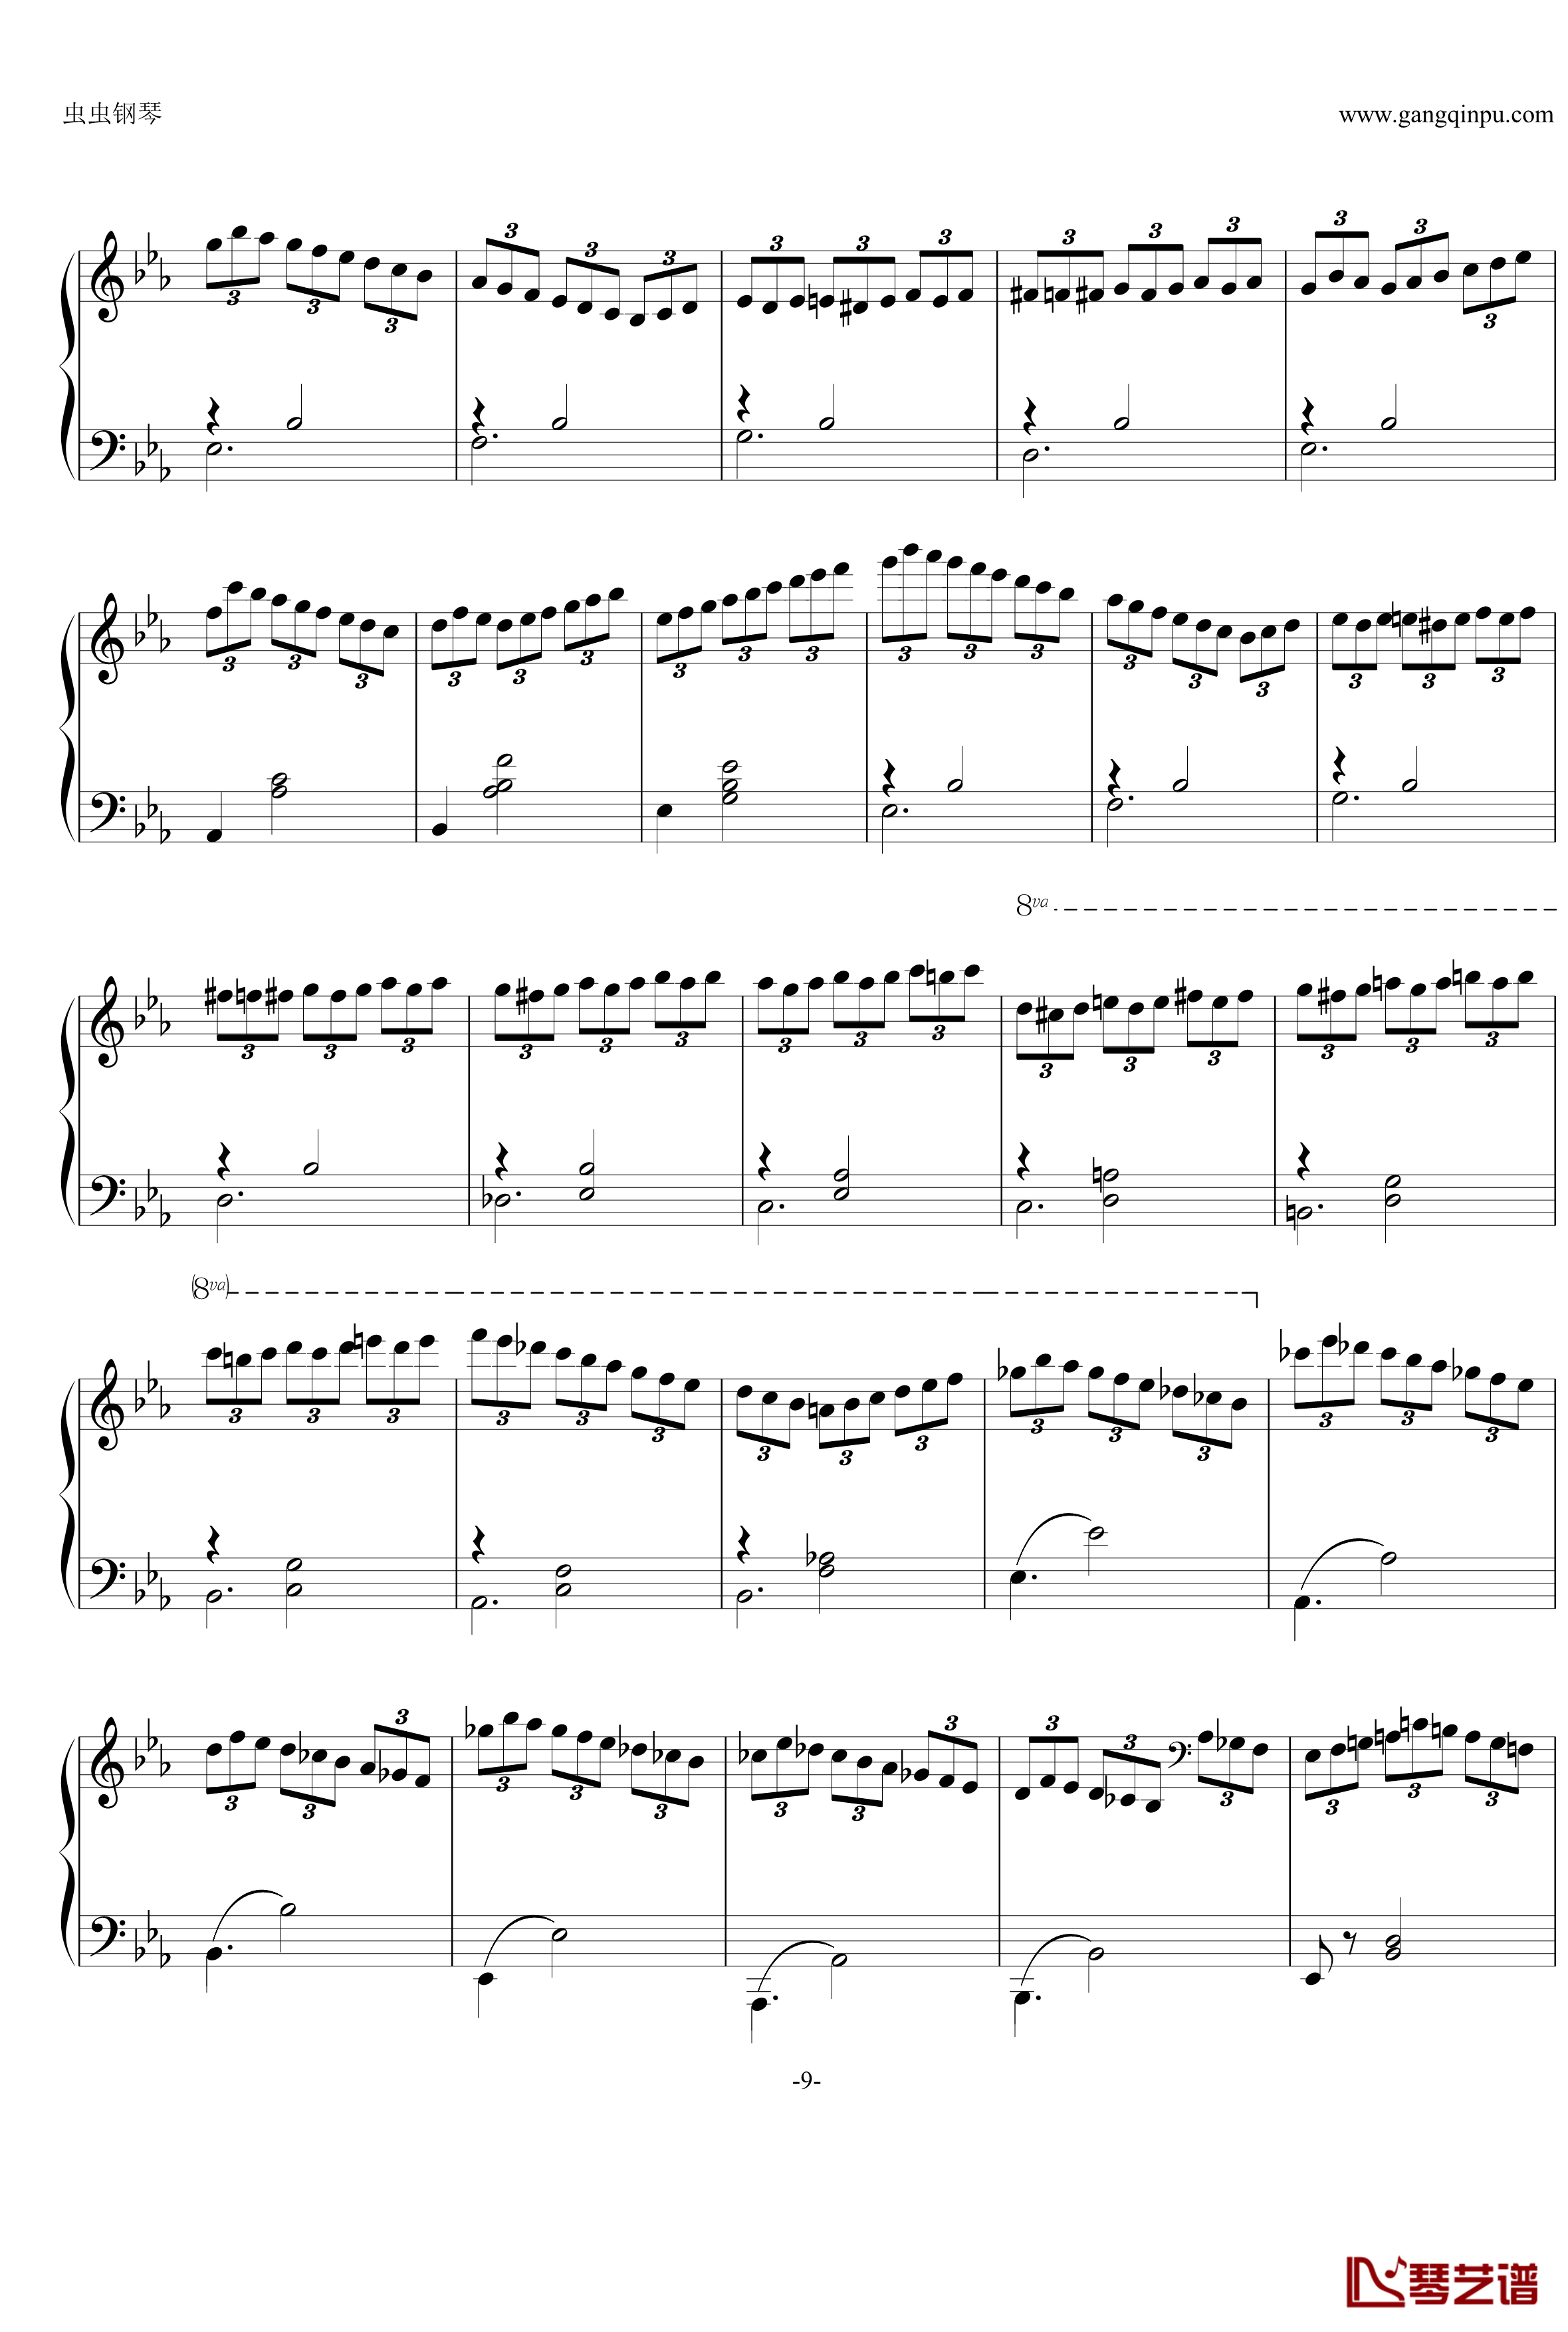 即兴曲Op.90 No.2钢琴谱-舒伯特-又名D899 No.29